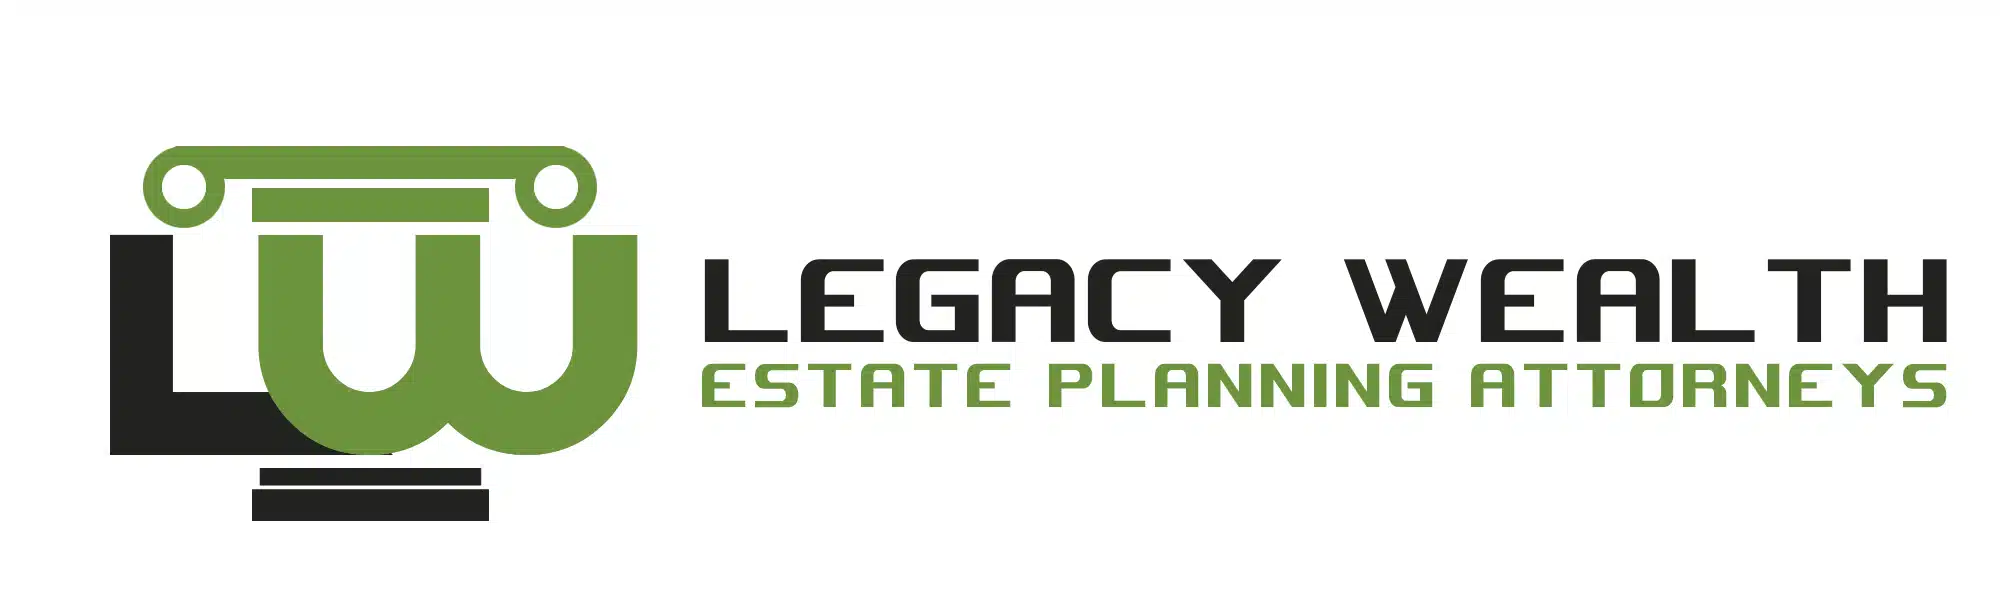 Legacy-Wealth.webp